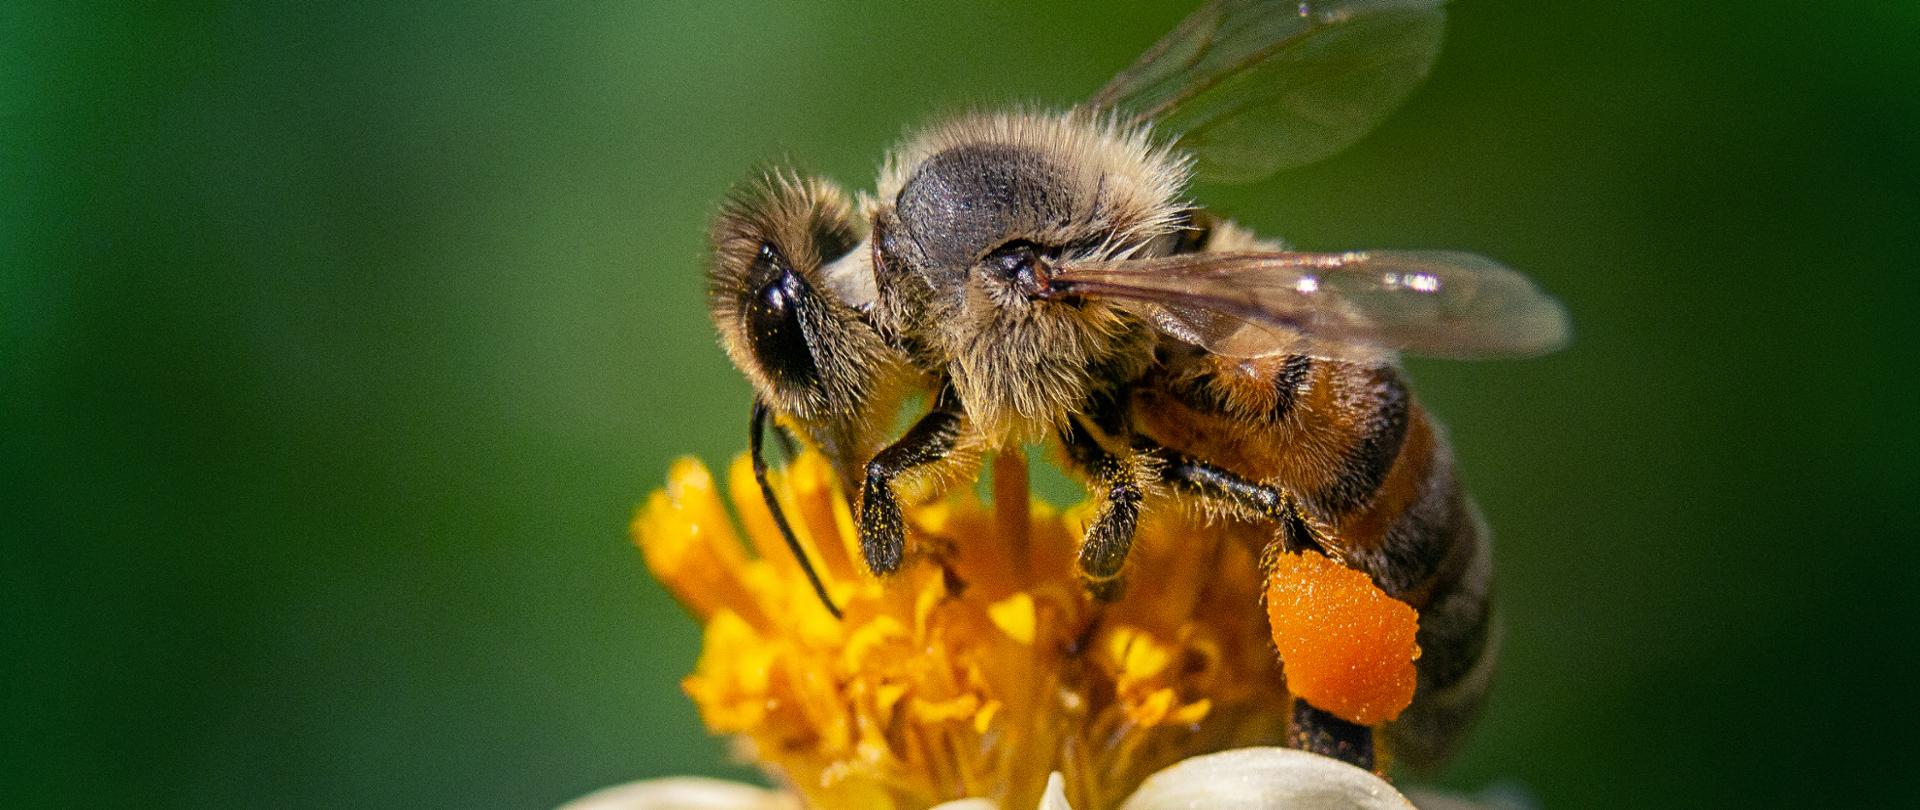 Pszczoła siedząca na żółtym kwiatku.